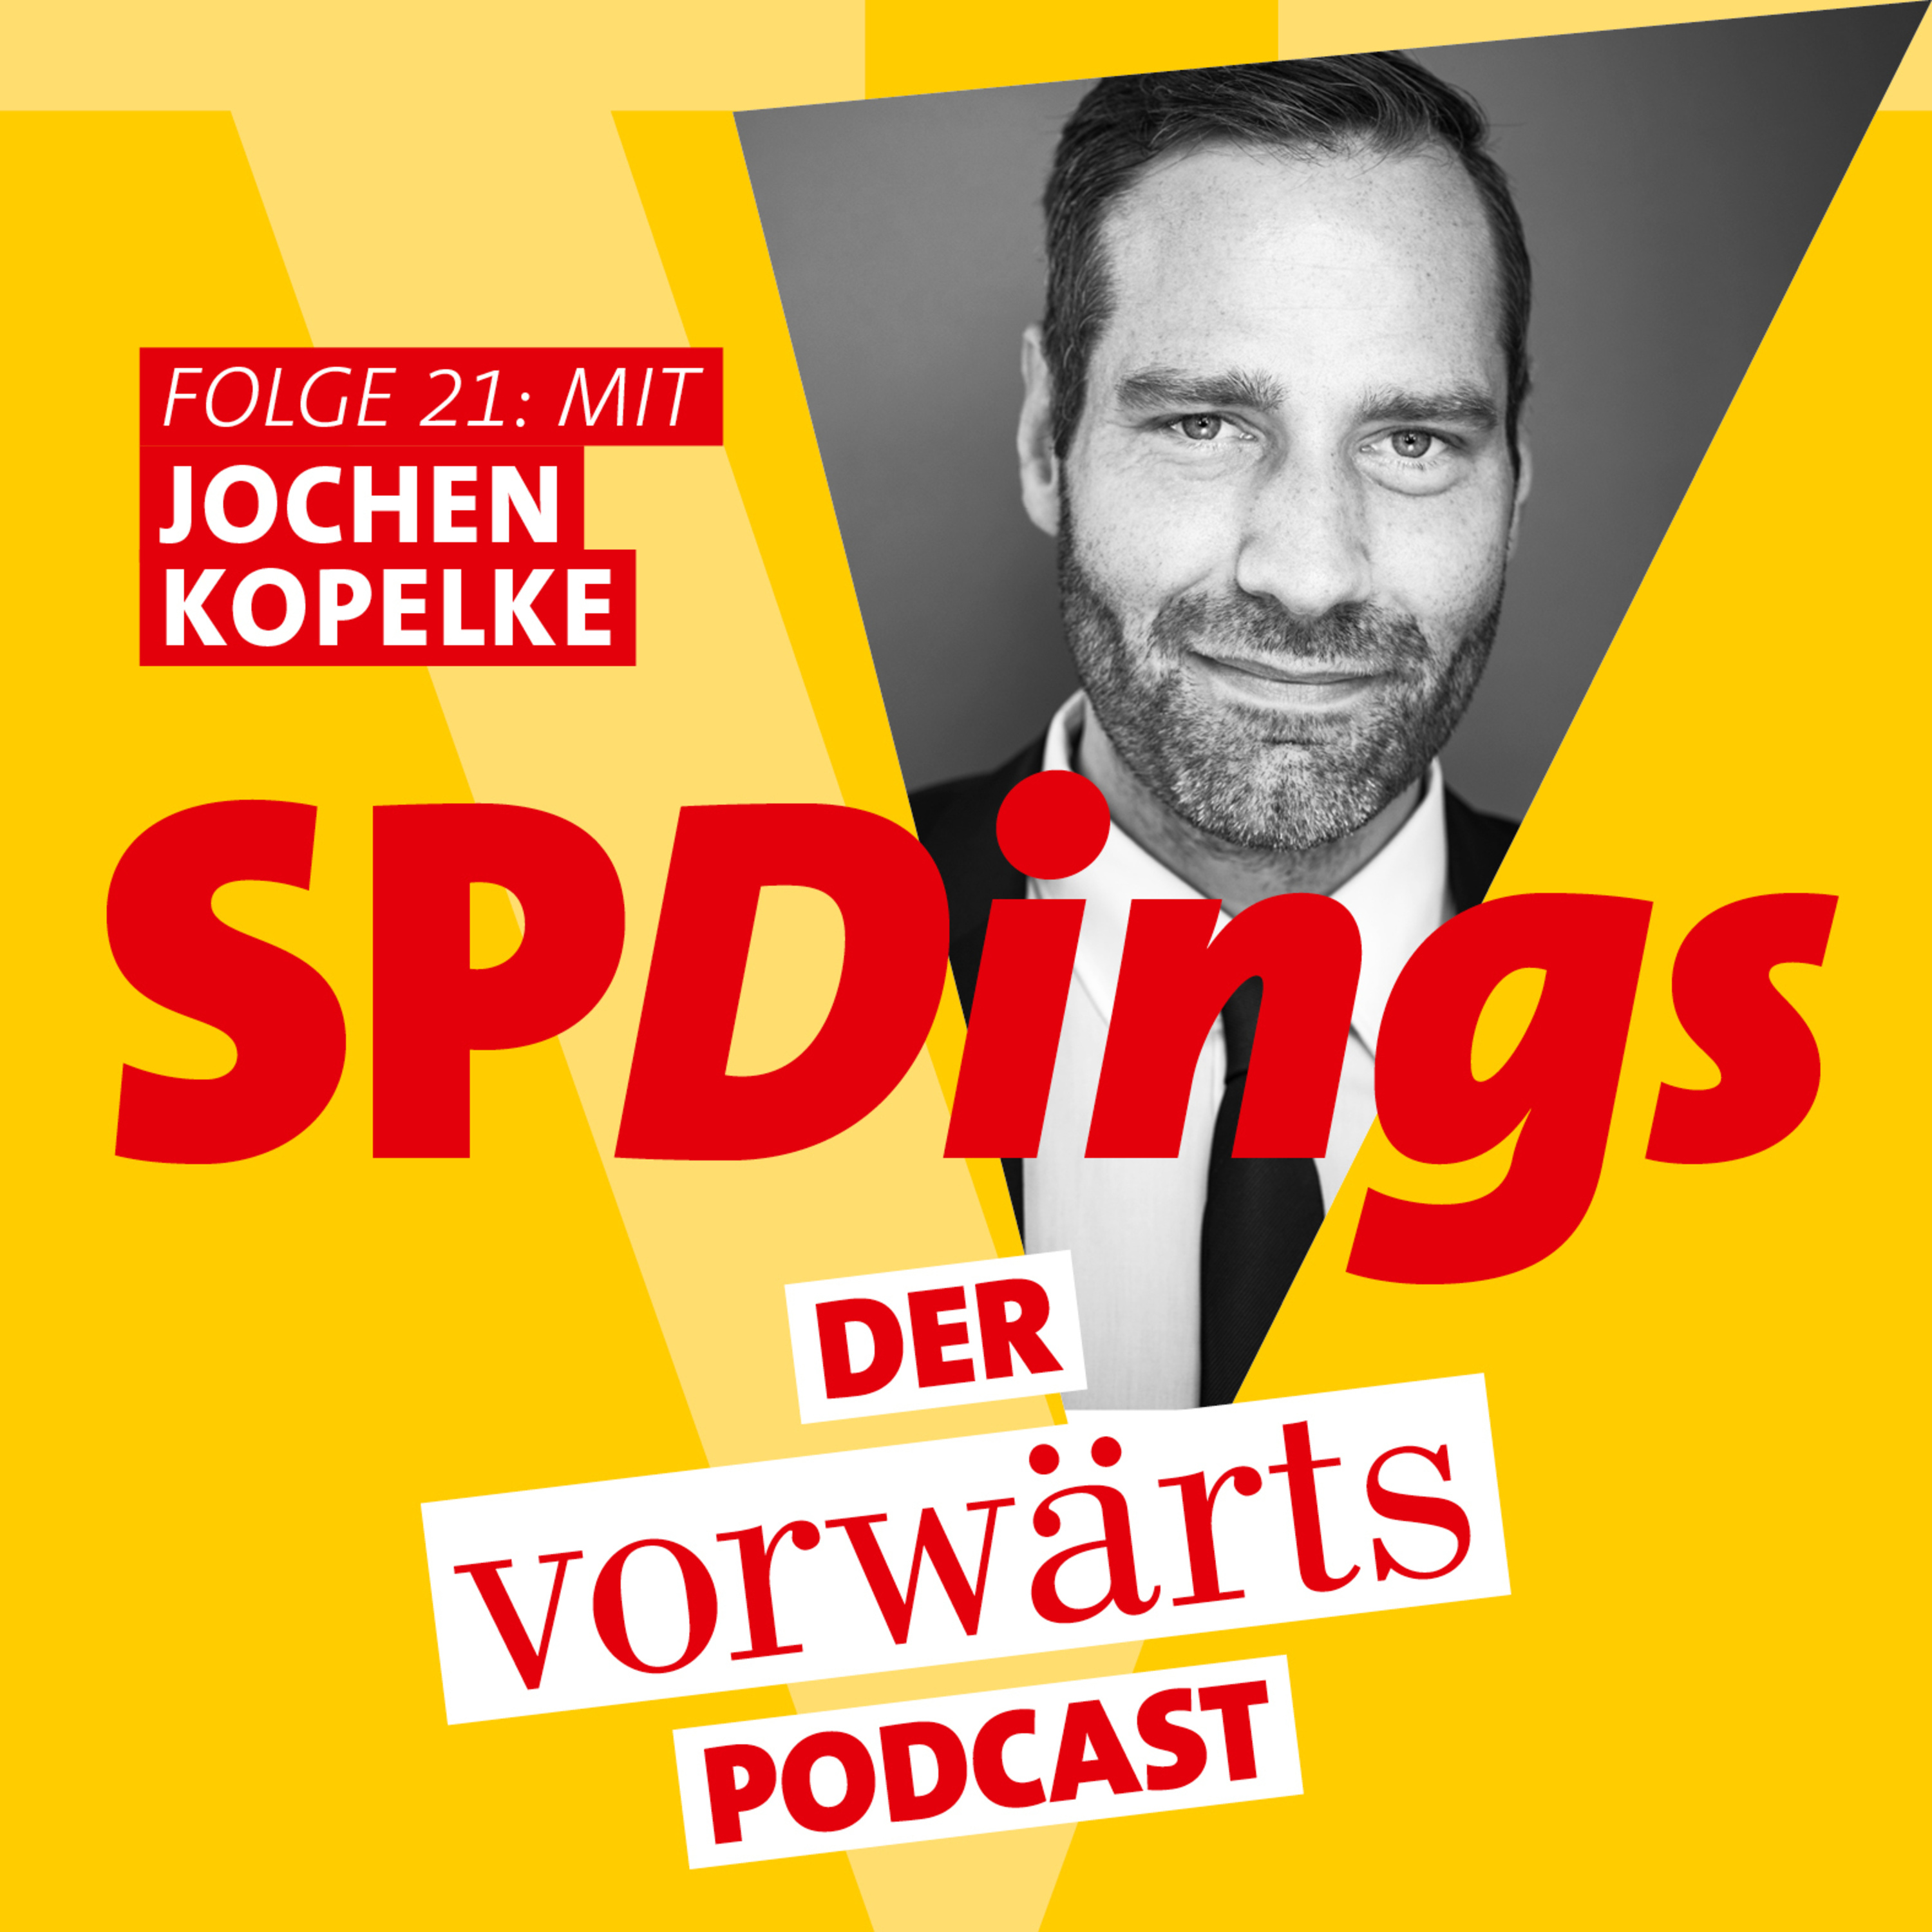 Folge 21 - mit Jochen Kopelke